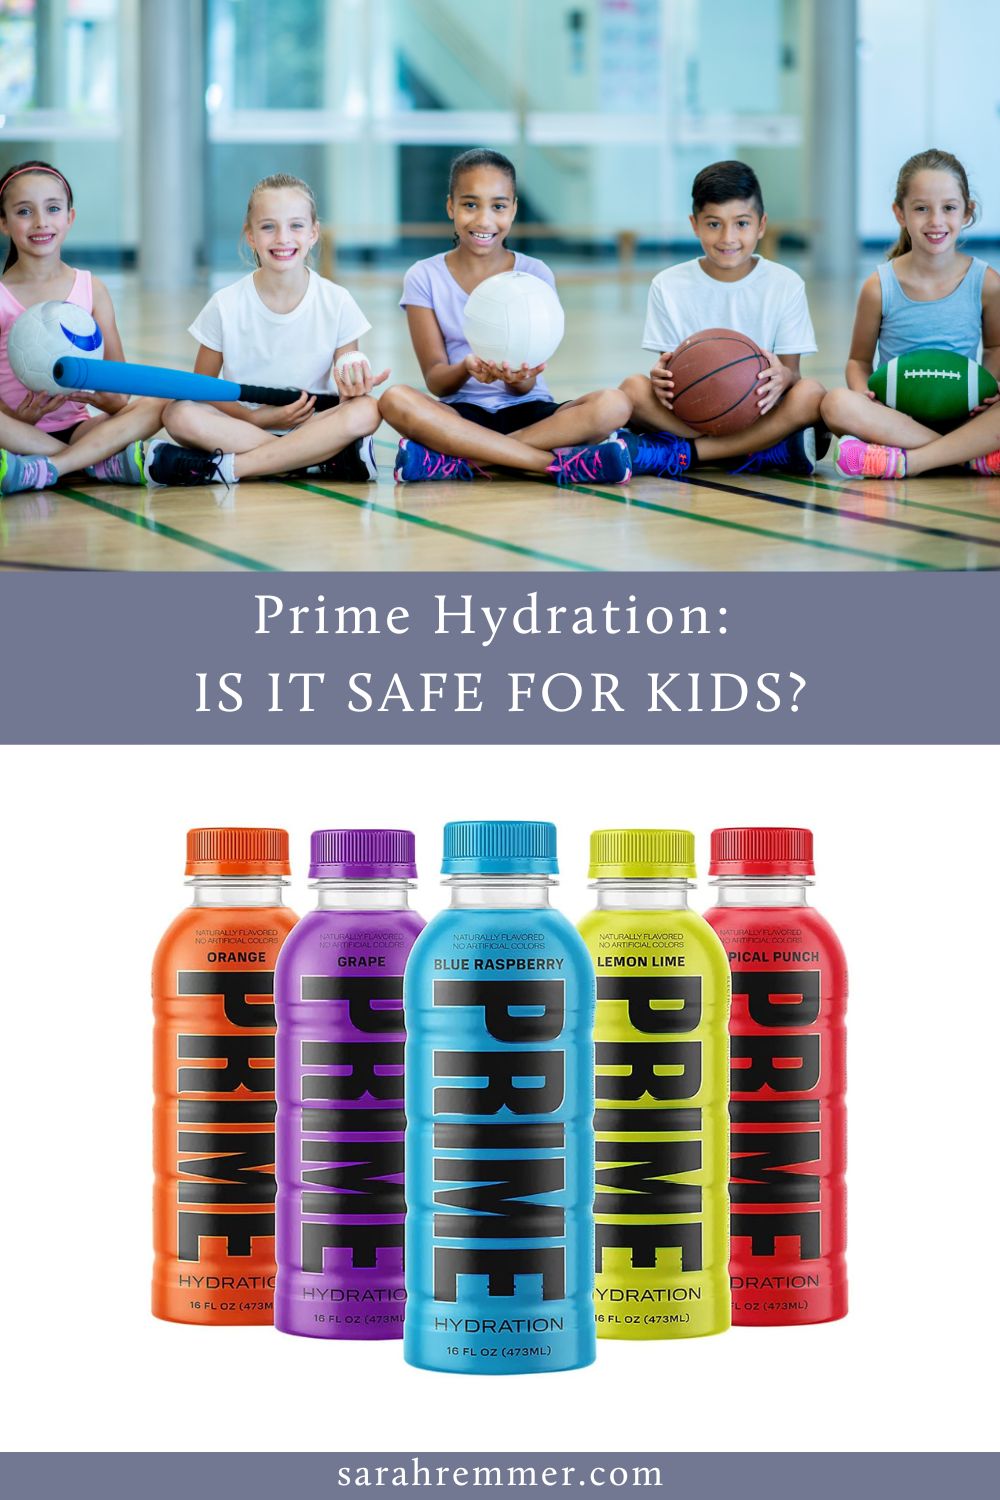 A primer hidratálás biztonságos -e a gyerekek számára? Dietetikus anyaként megosztom azt, amit tudnod kell erről a népszerű sportitalról